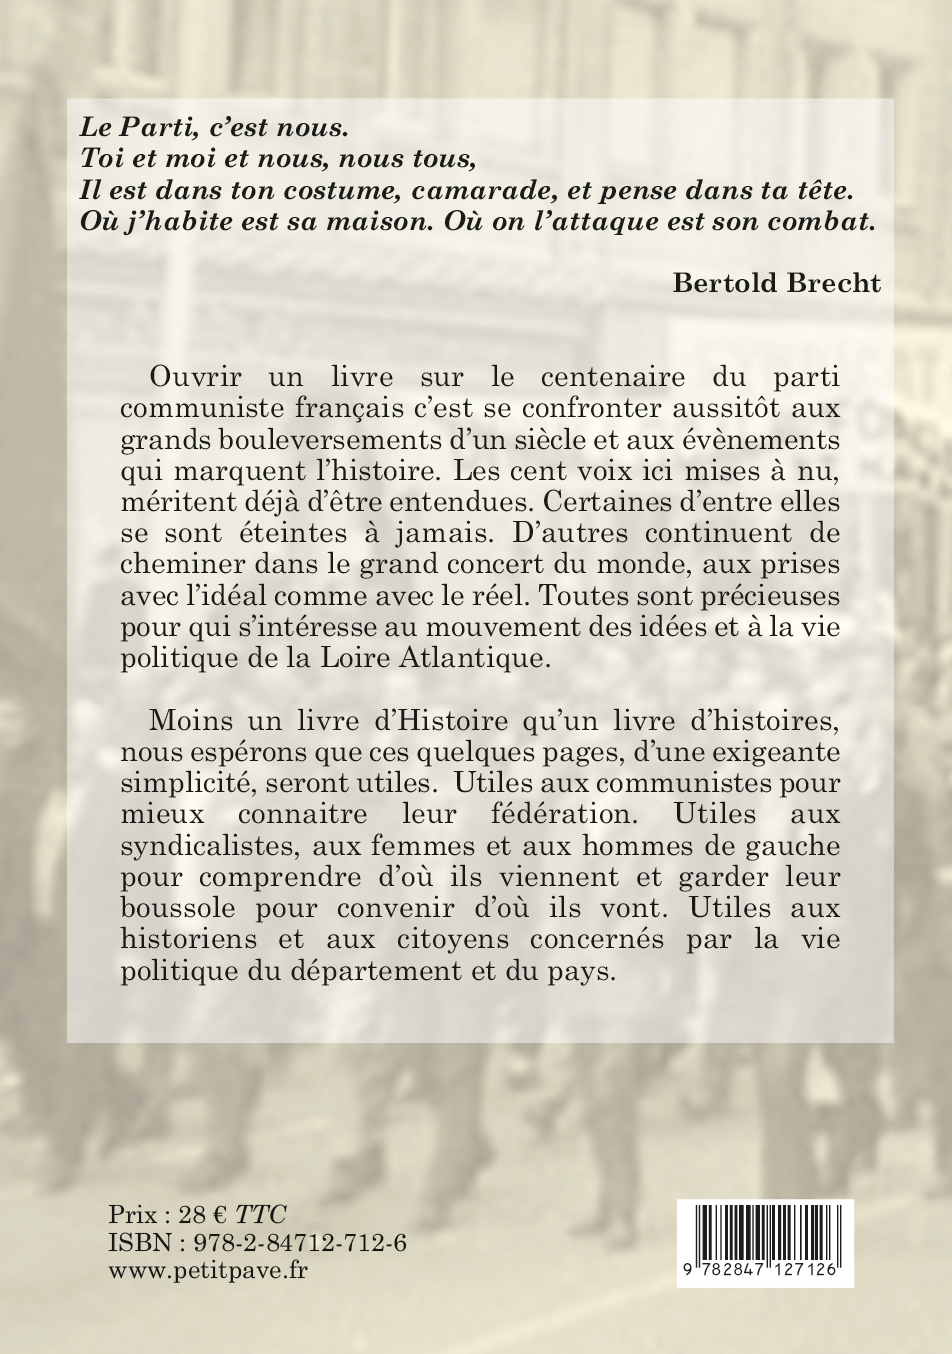 100 ans de communistes en Loire-Inférieure et Atlantique - Photo 4eme_couverture_100_ans_de_communistes_en_loire-inferieur_et_atlantique_aux_editions_du_petit_pave.jpg